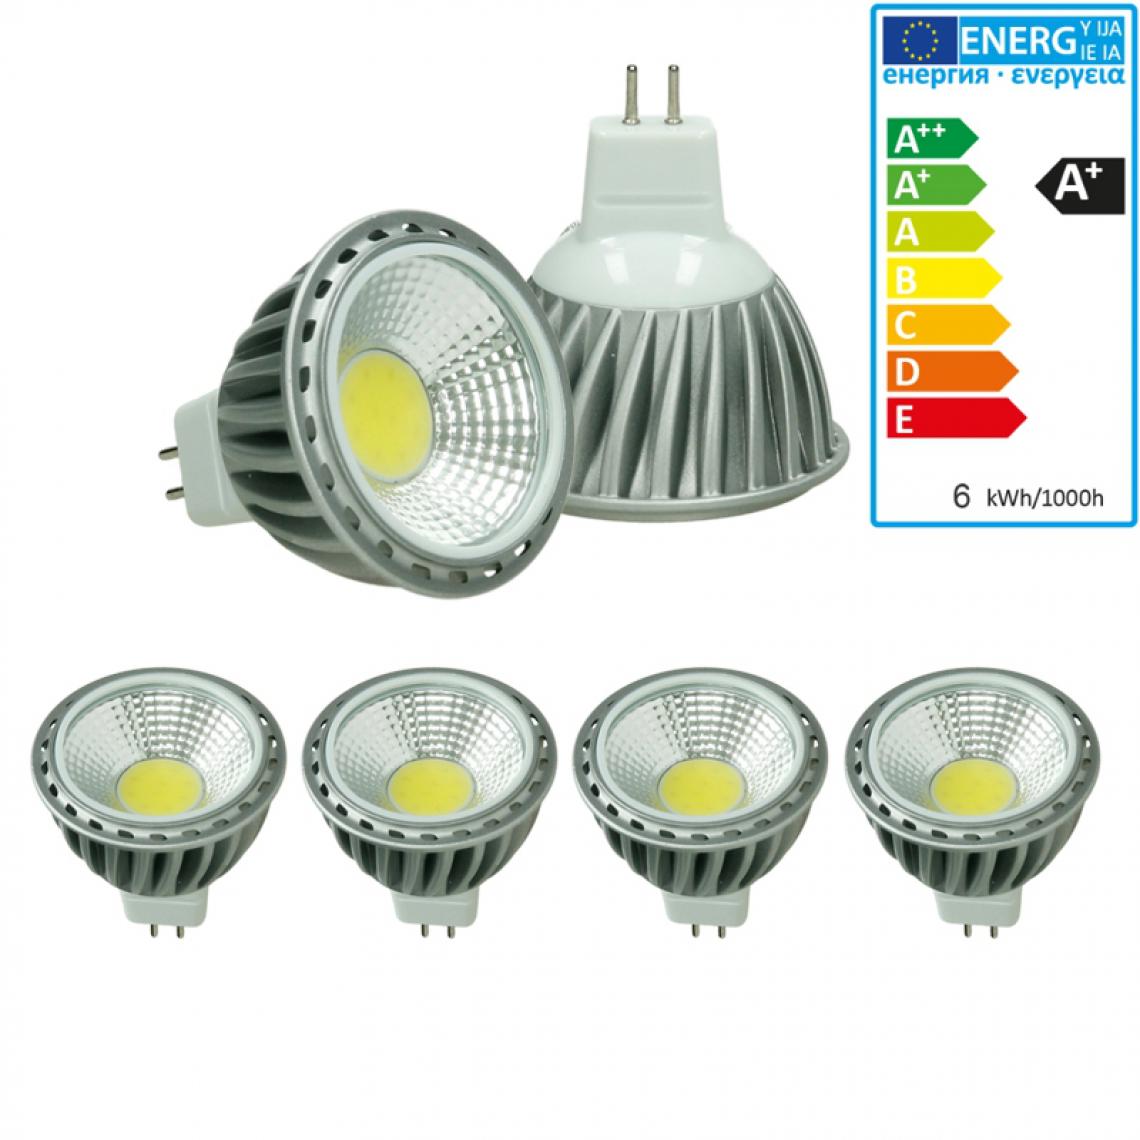 Ecd Germany - ECD Germany 4 x MR16 COB spot 6W Lampe à économie d'énergie haute puissance d'environ 378 lumens remplace 45W Lampe halogène angle de 60 degrés Blanc froid 6000K - Ampoules LED